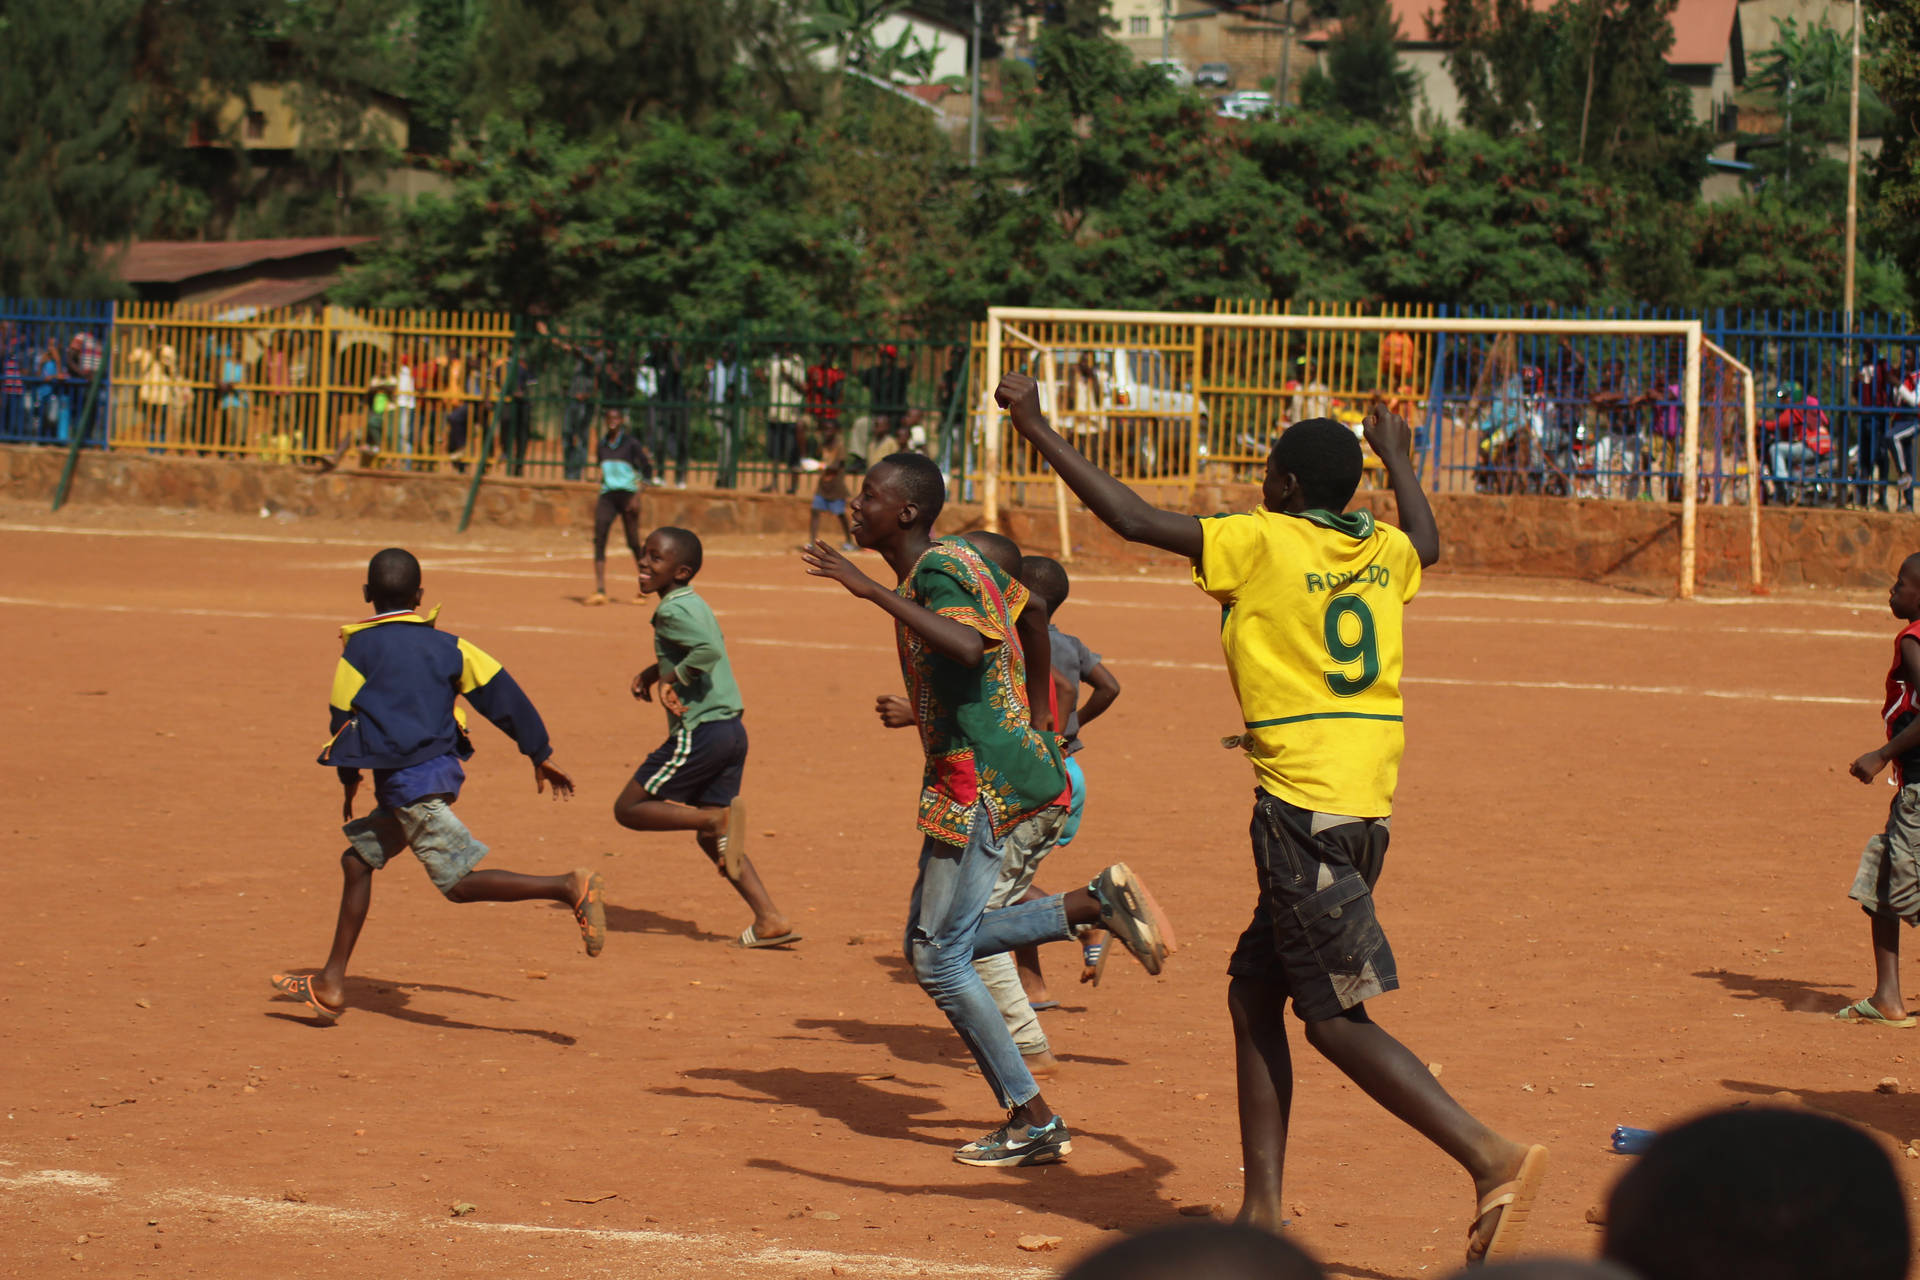 Rwandisk Fodbold Spiller på Baggrund: Korn tegner stjerneformet mønster Wallpaper